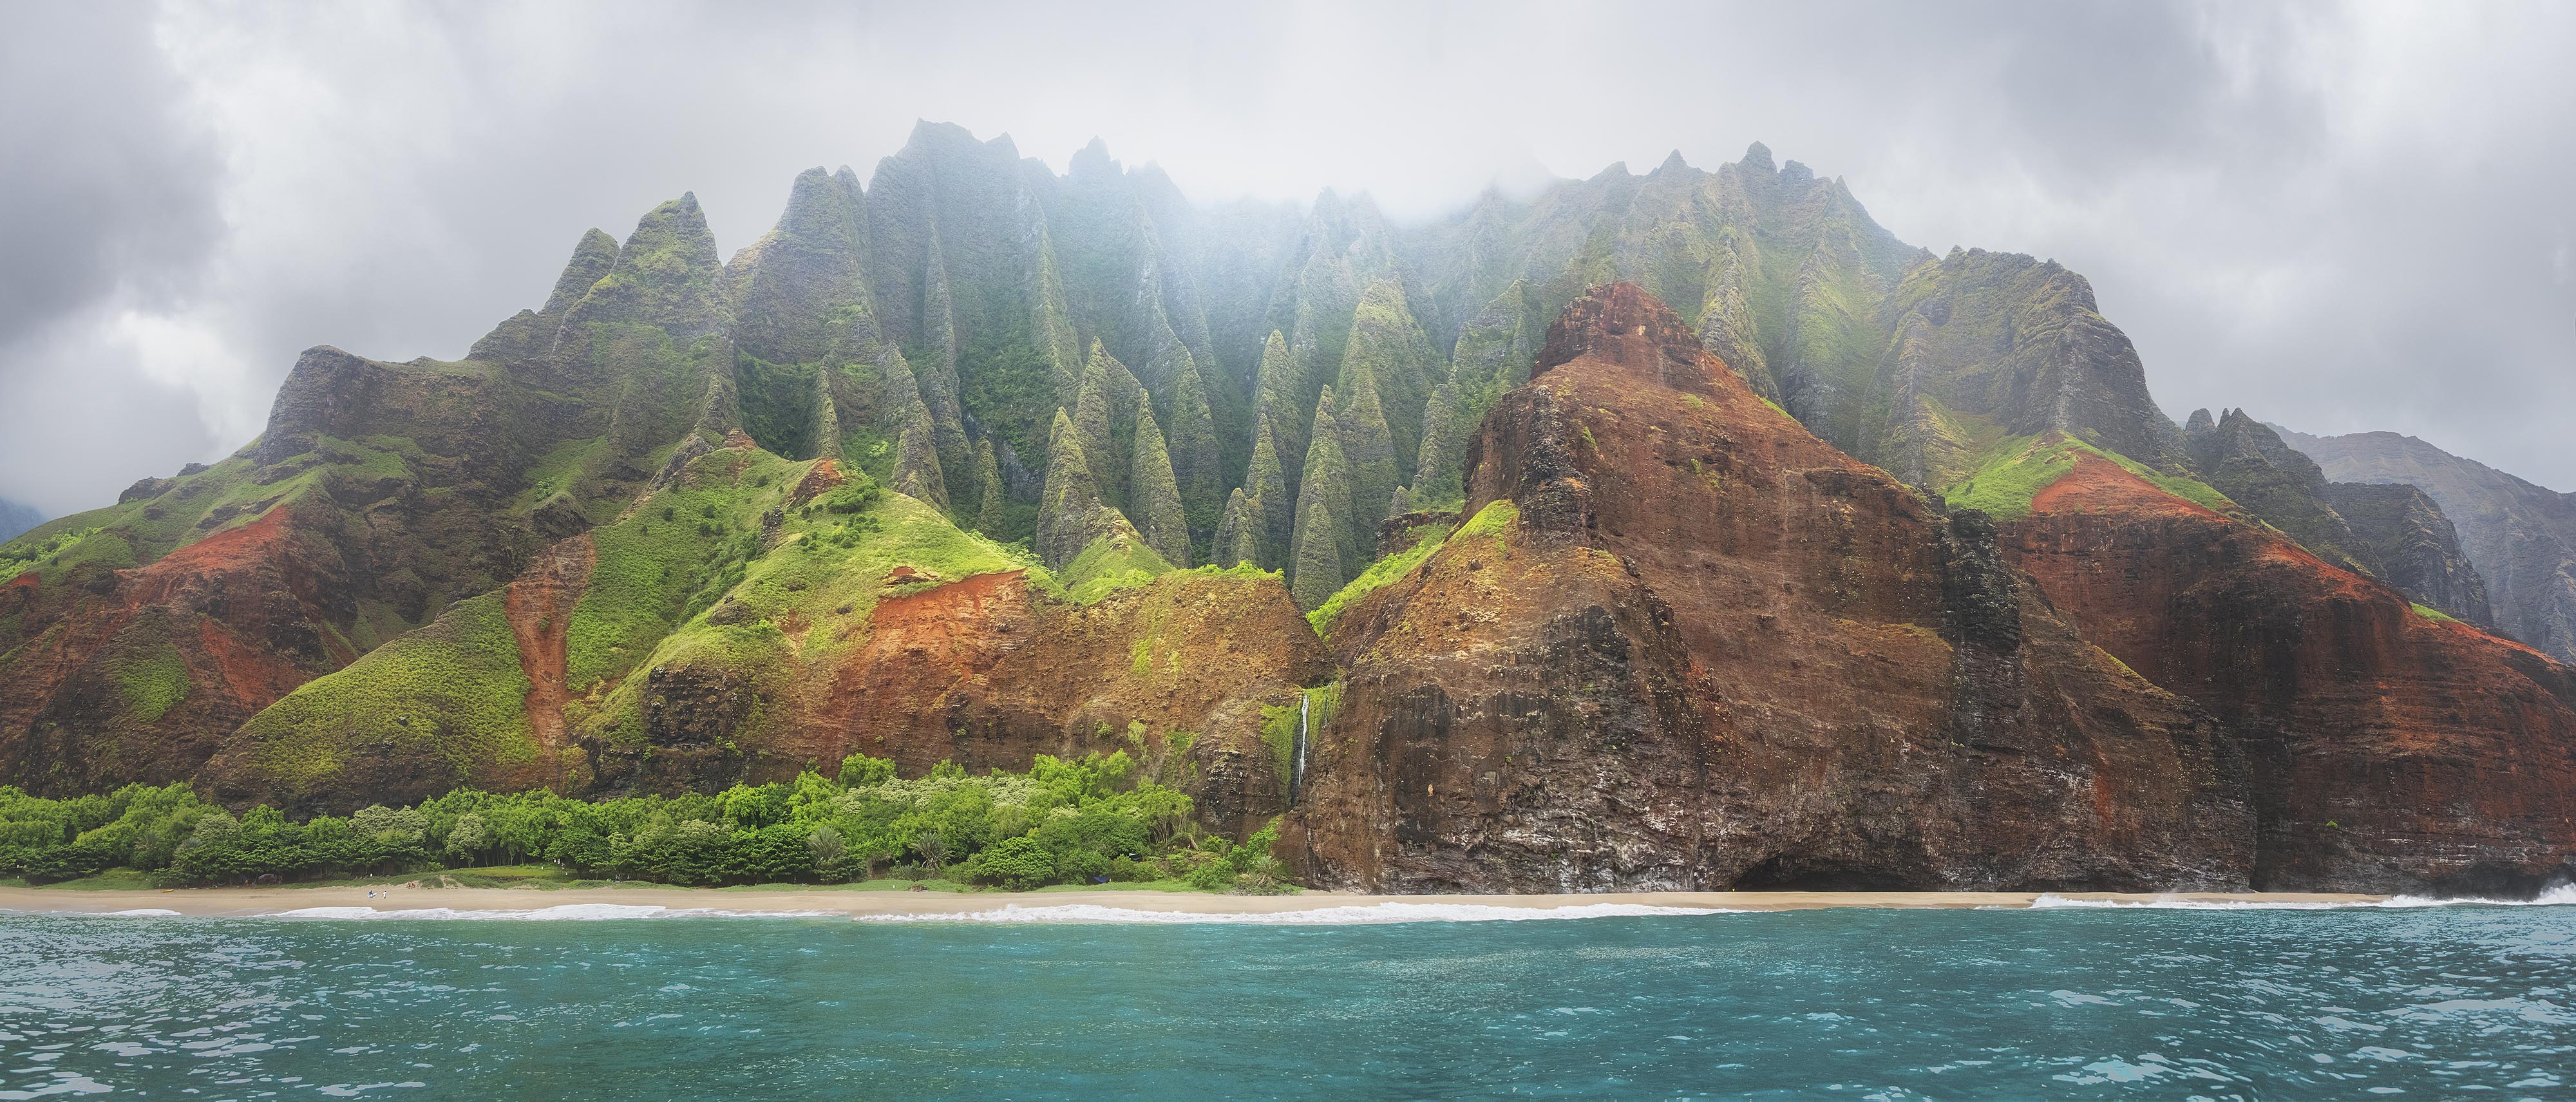 NaPali Coast in Kauai Hawaii